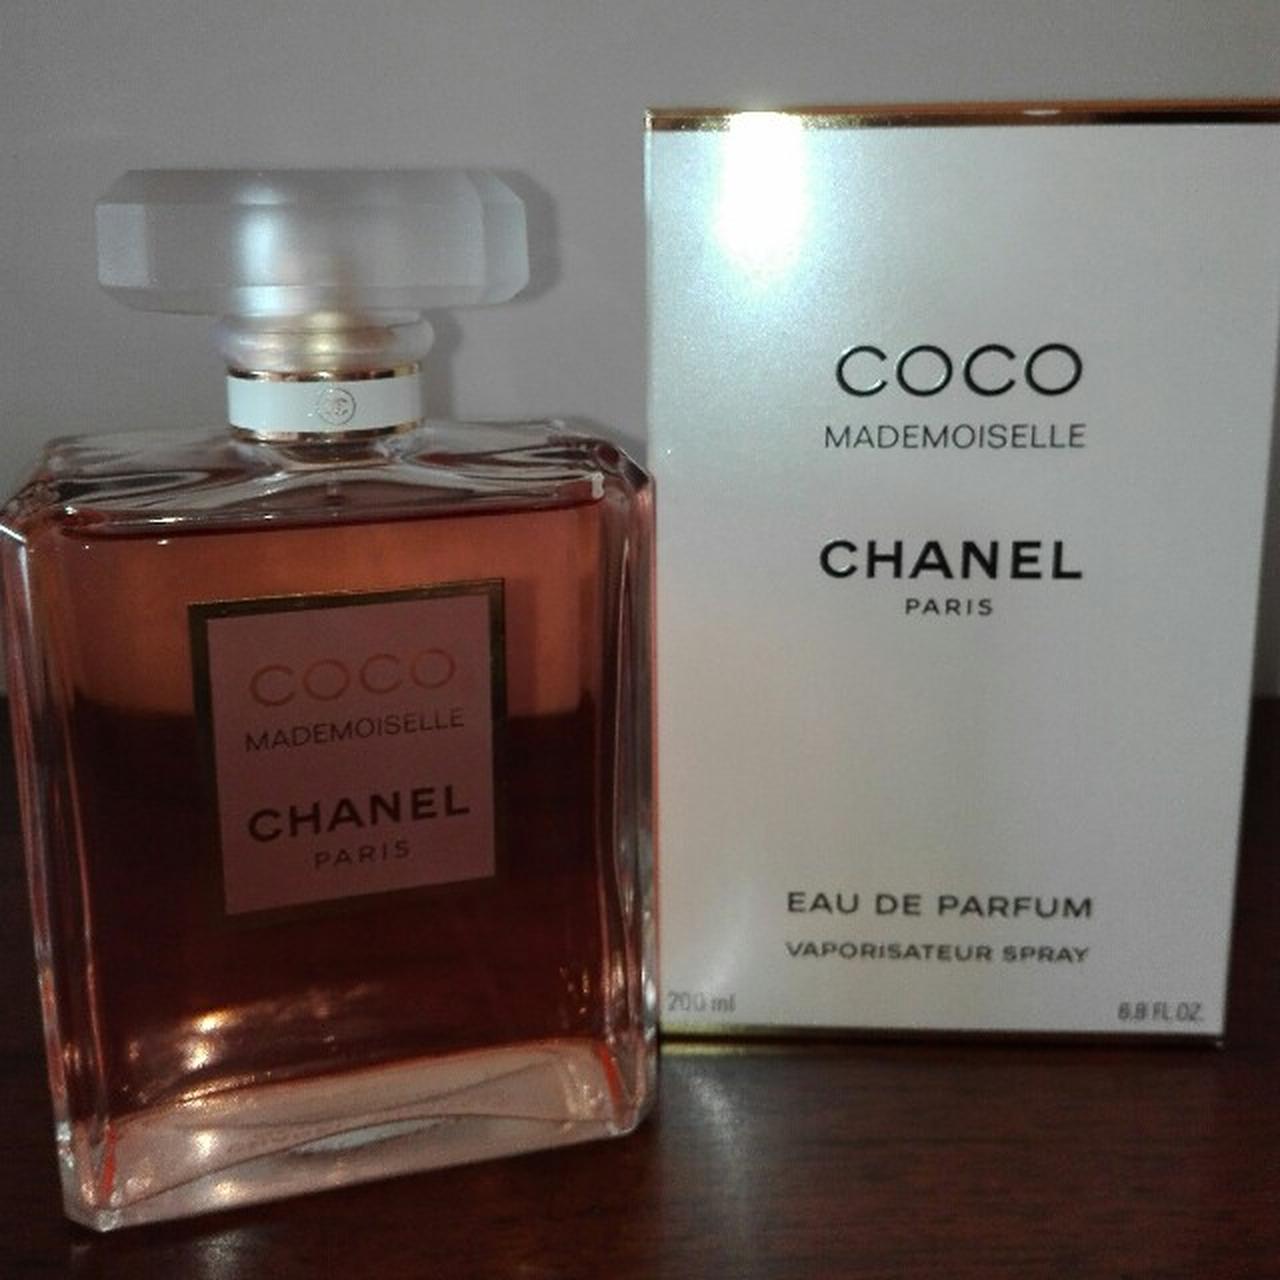 Chanel Coco Mademoiselle Eau de Parfum 200ml - Depop